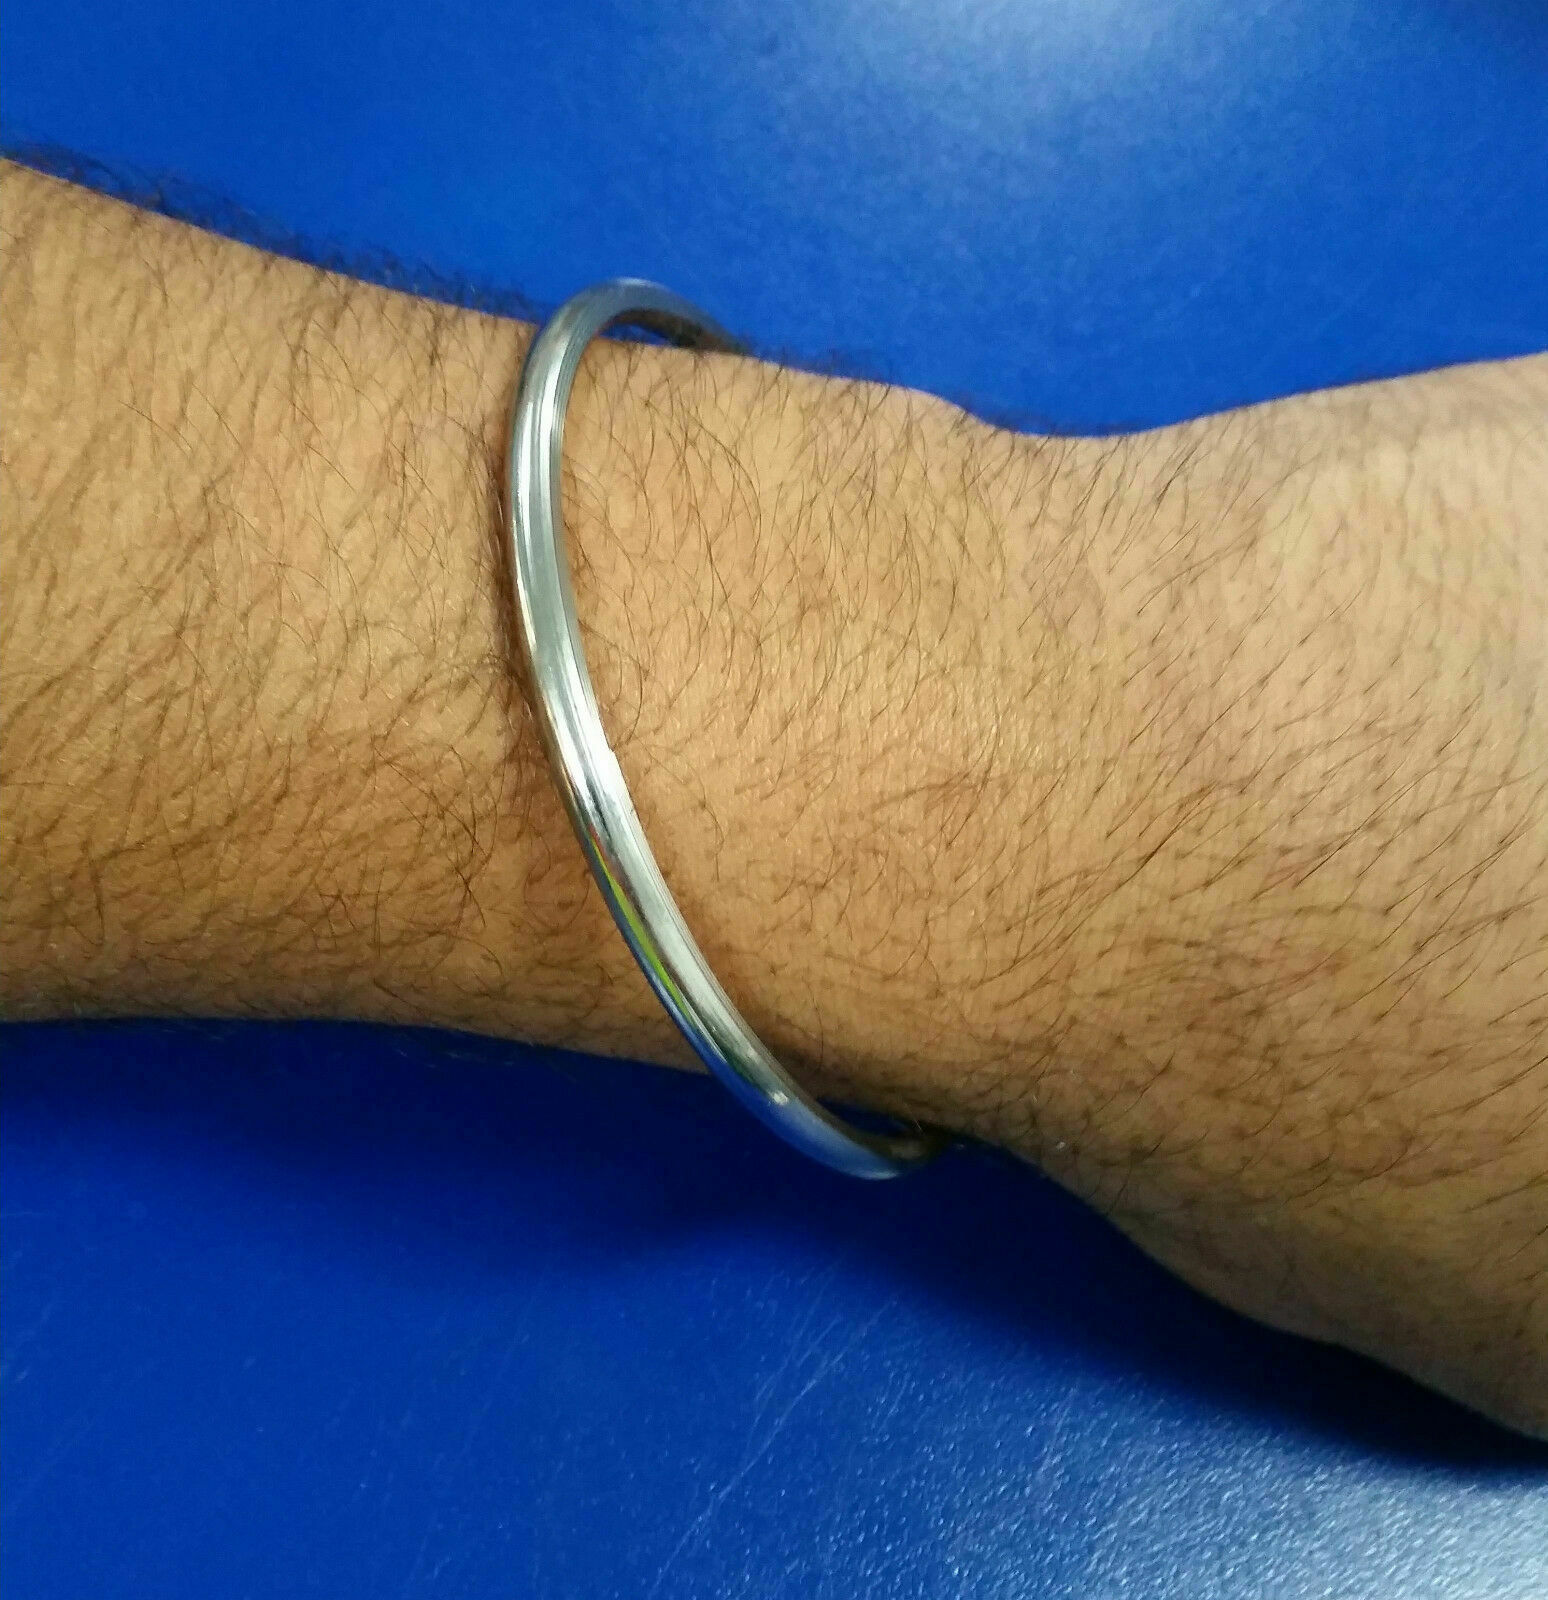 Stainless steel smooth punjabi sikh singh kaur khalsa kara kada bracelet  gift v3